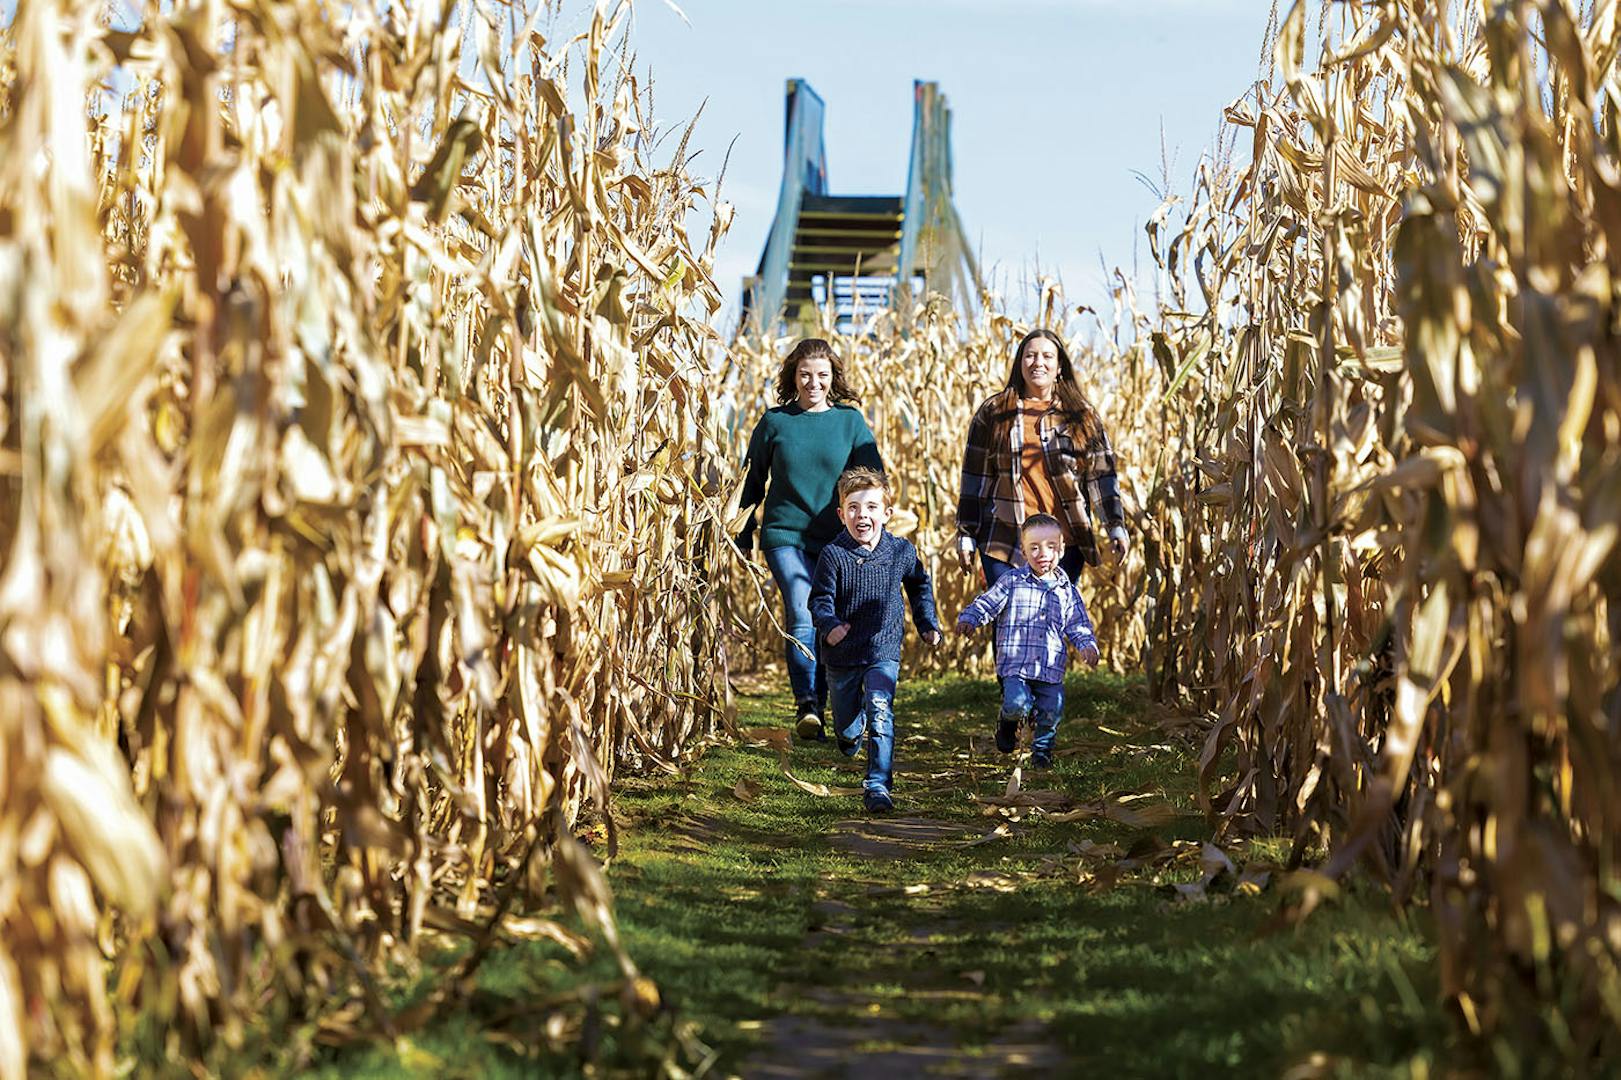 Women and children explore a corn maze in Stark County, Ohio